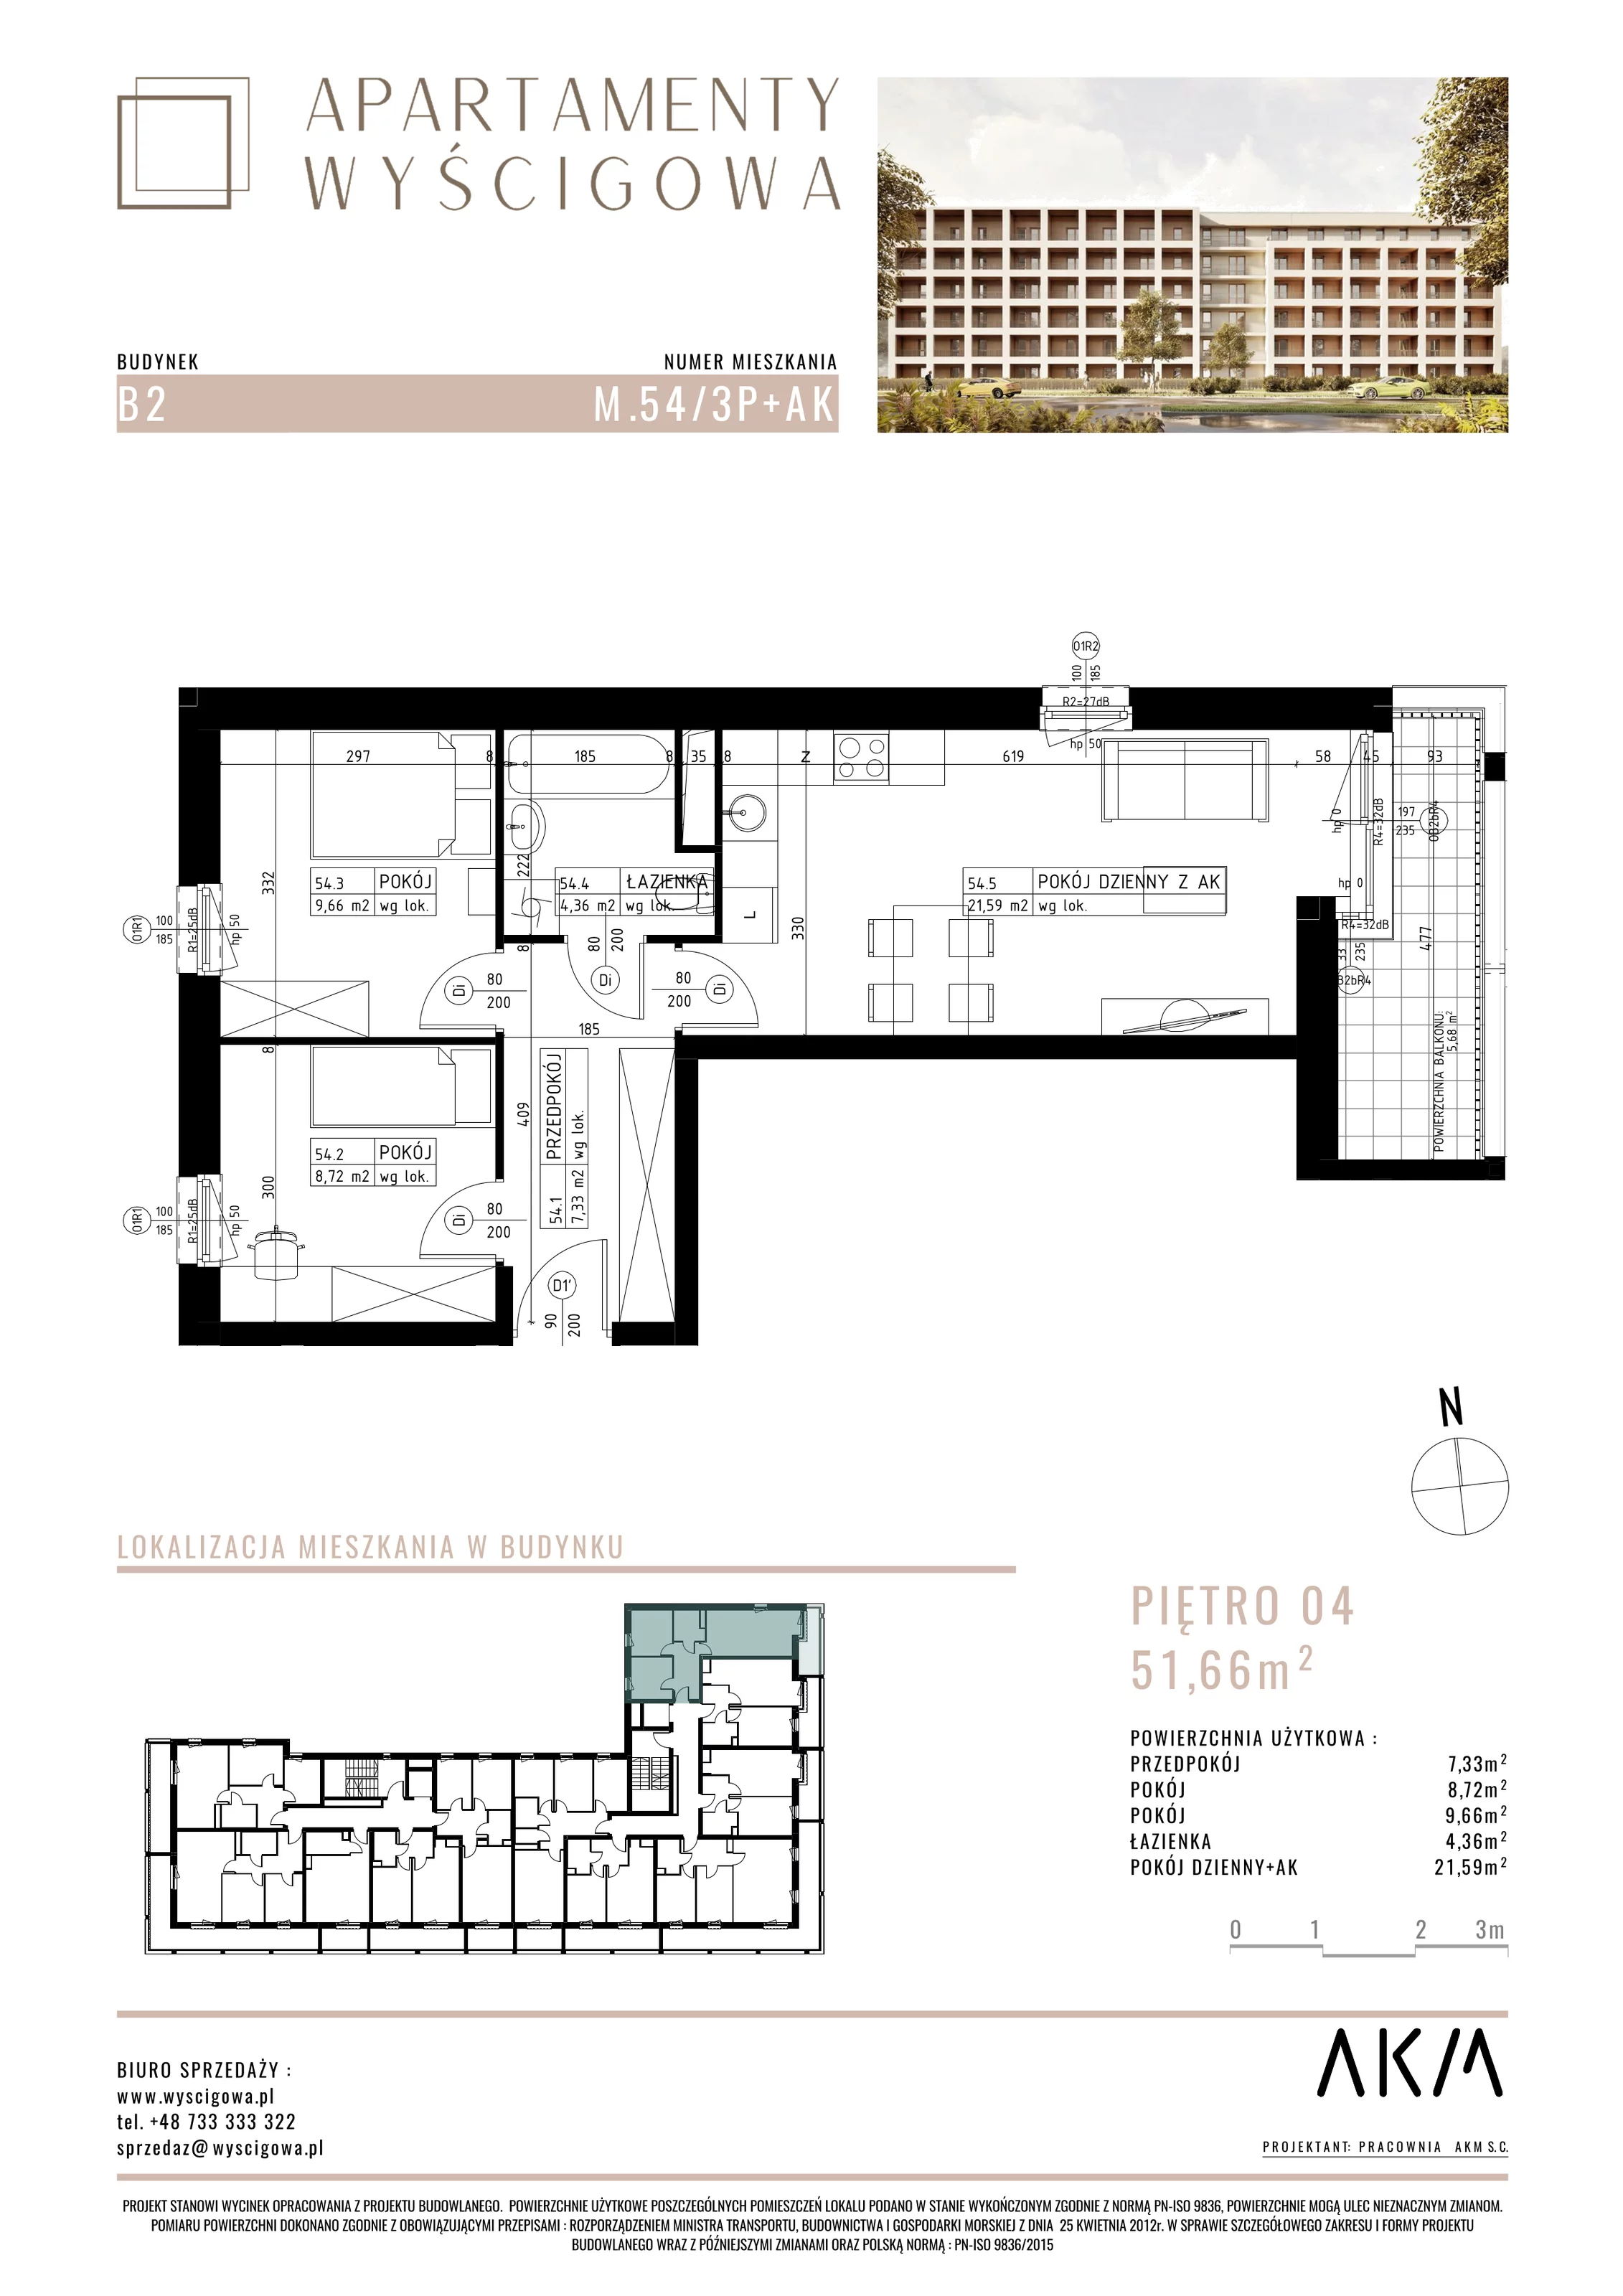 Mieszkanie 51,66 m², piętro 4, oferta nr B2.M54, Apartamenty Wyścigowa, Lublin, Dziesiąta, Dziesiąta, ul. Wyścigowa